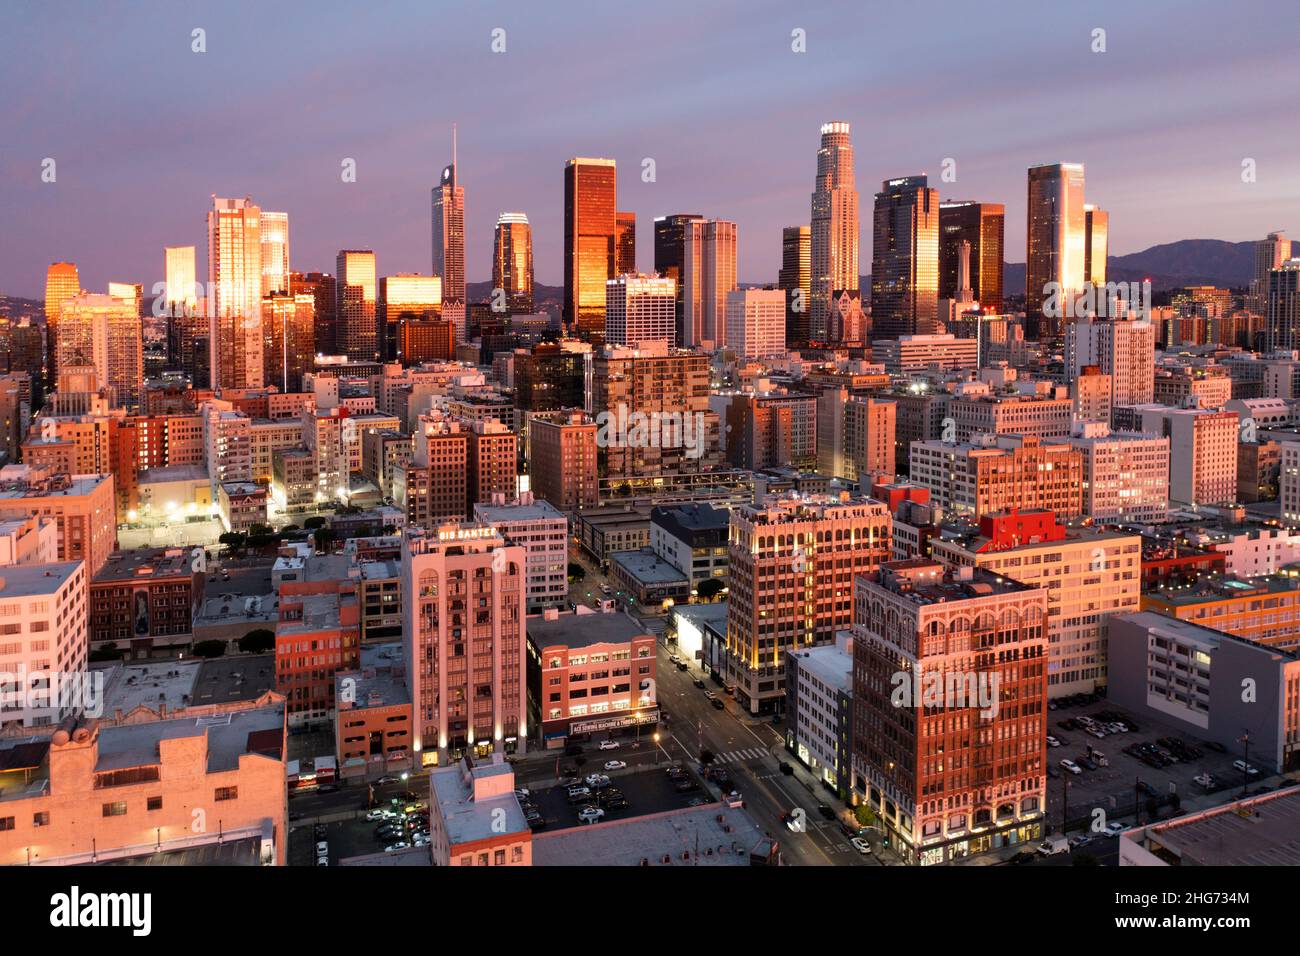 Vue aérienne d'un incroyable lever de soleil rose et or se reflète dans les tours du centre-ville de Los Angeles Banque D'Images